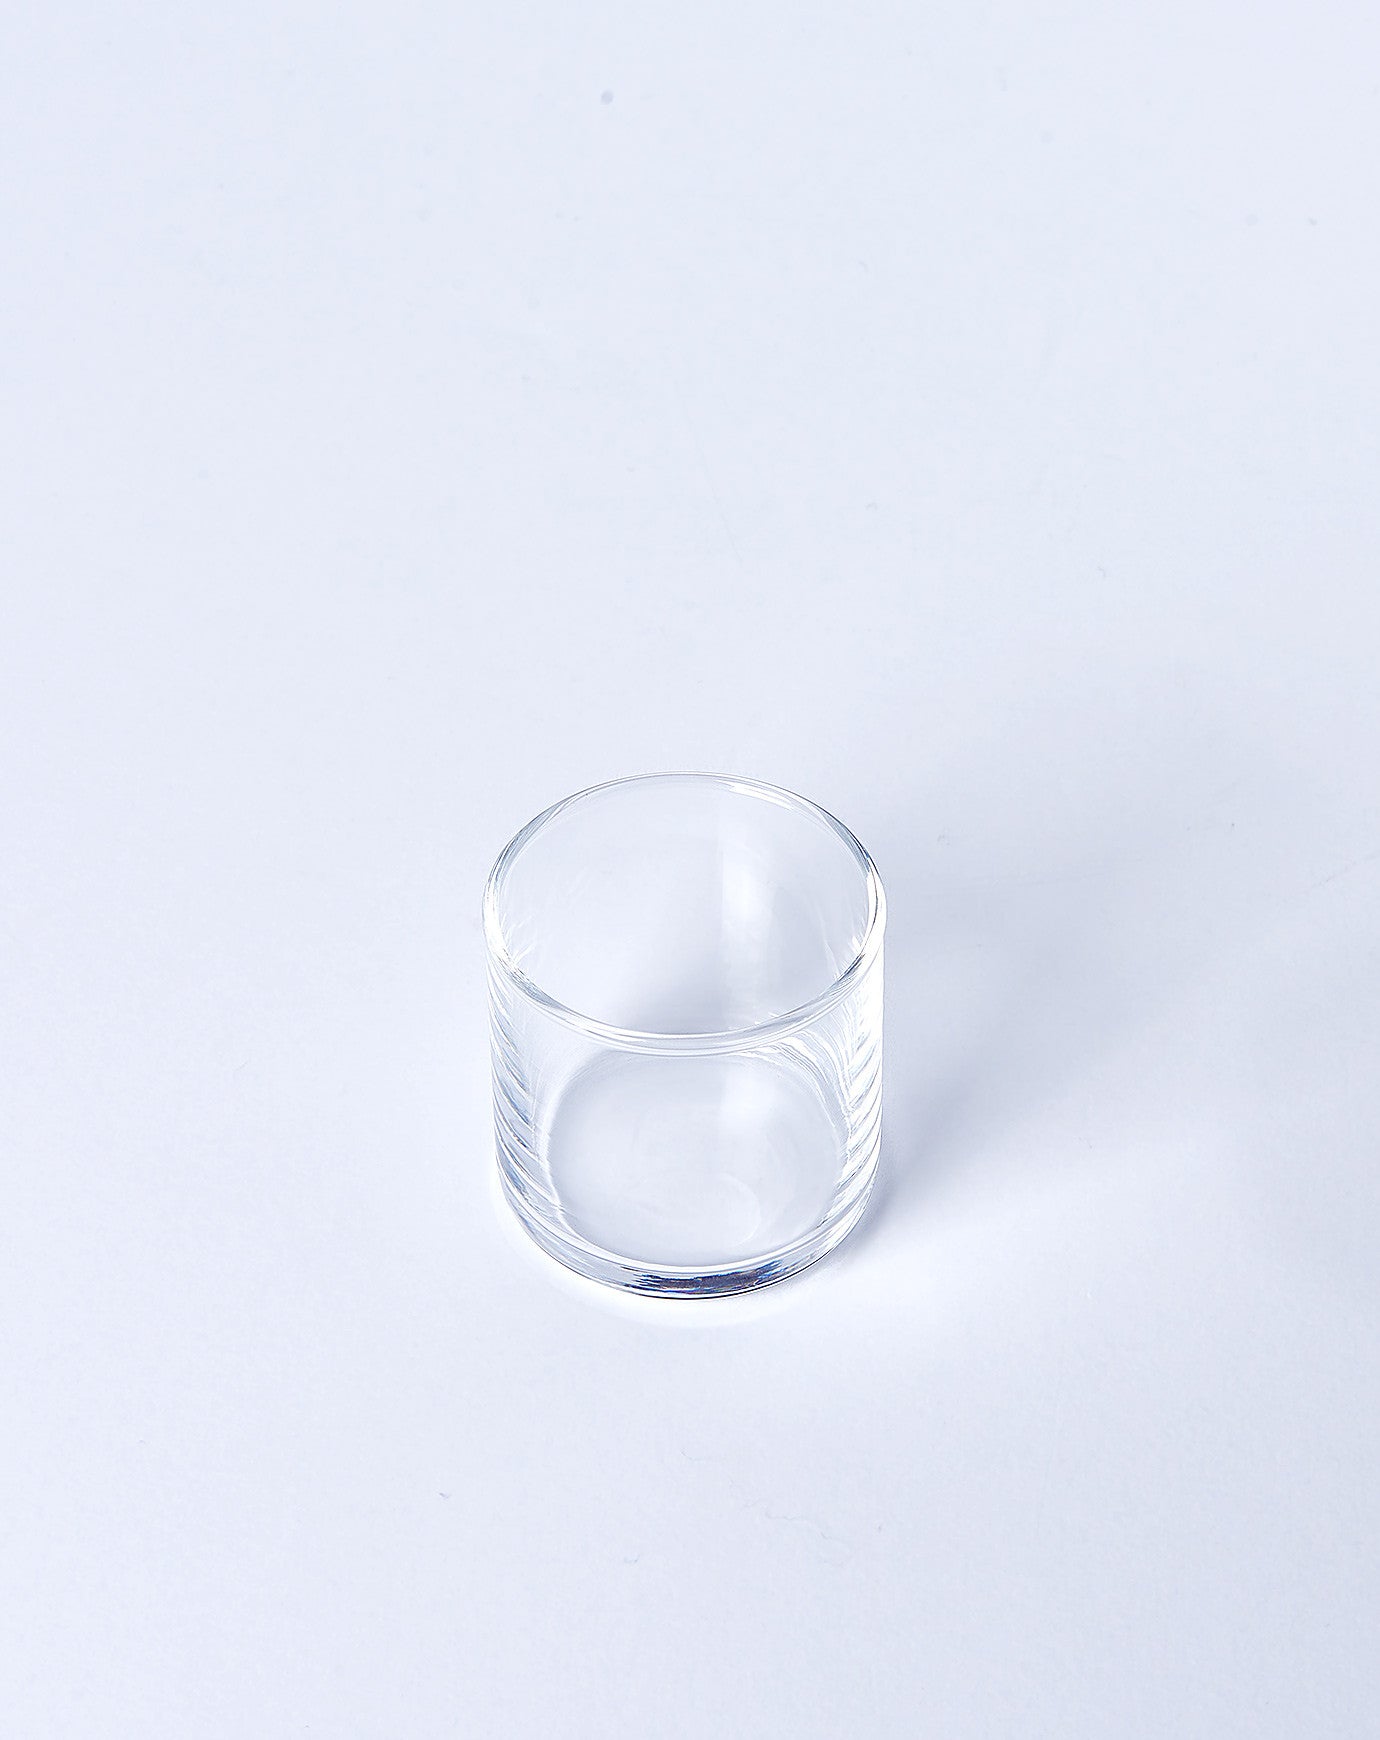 Toyo Sasaki Small Glass Tumbler